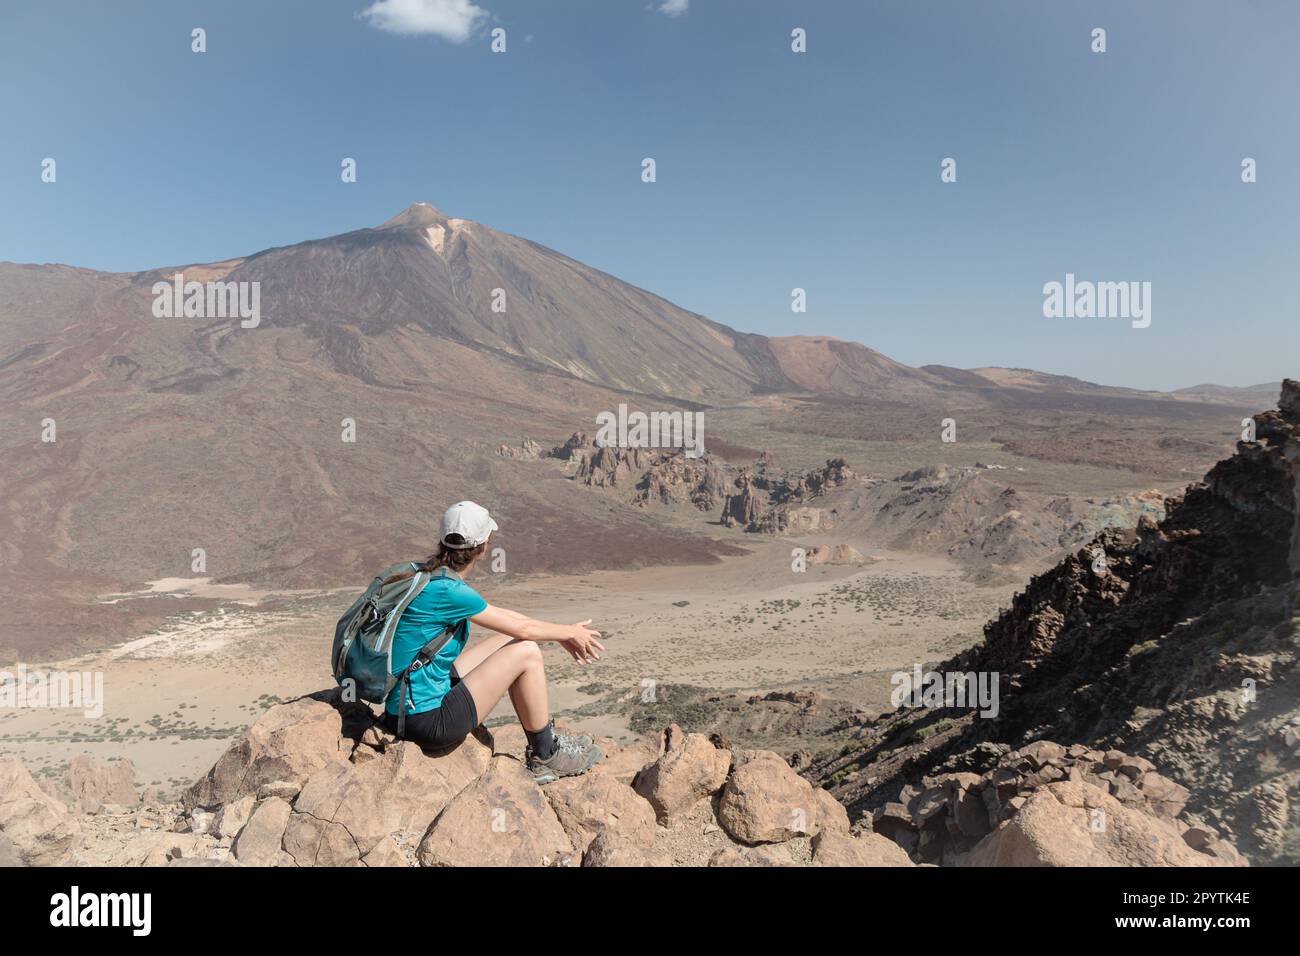 Une jeune fille touristique à côté du pic du Mont Teide appelée « Pico del Teide ». Vue sur la caldeira et le paysage volcanique. Parc national de Teide, Tenerife, Canaries Banque D'Images